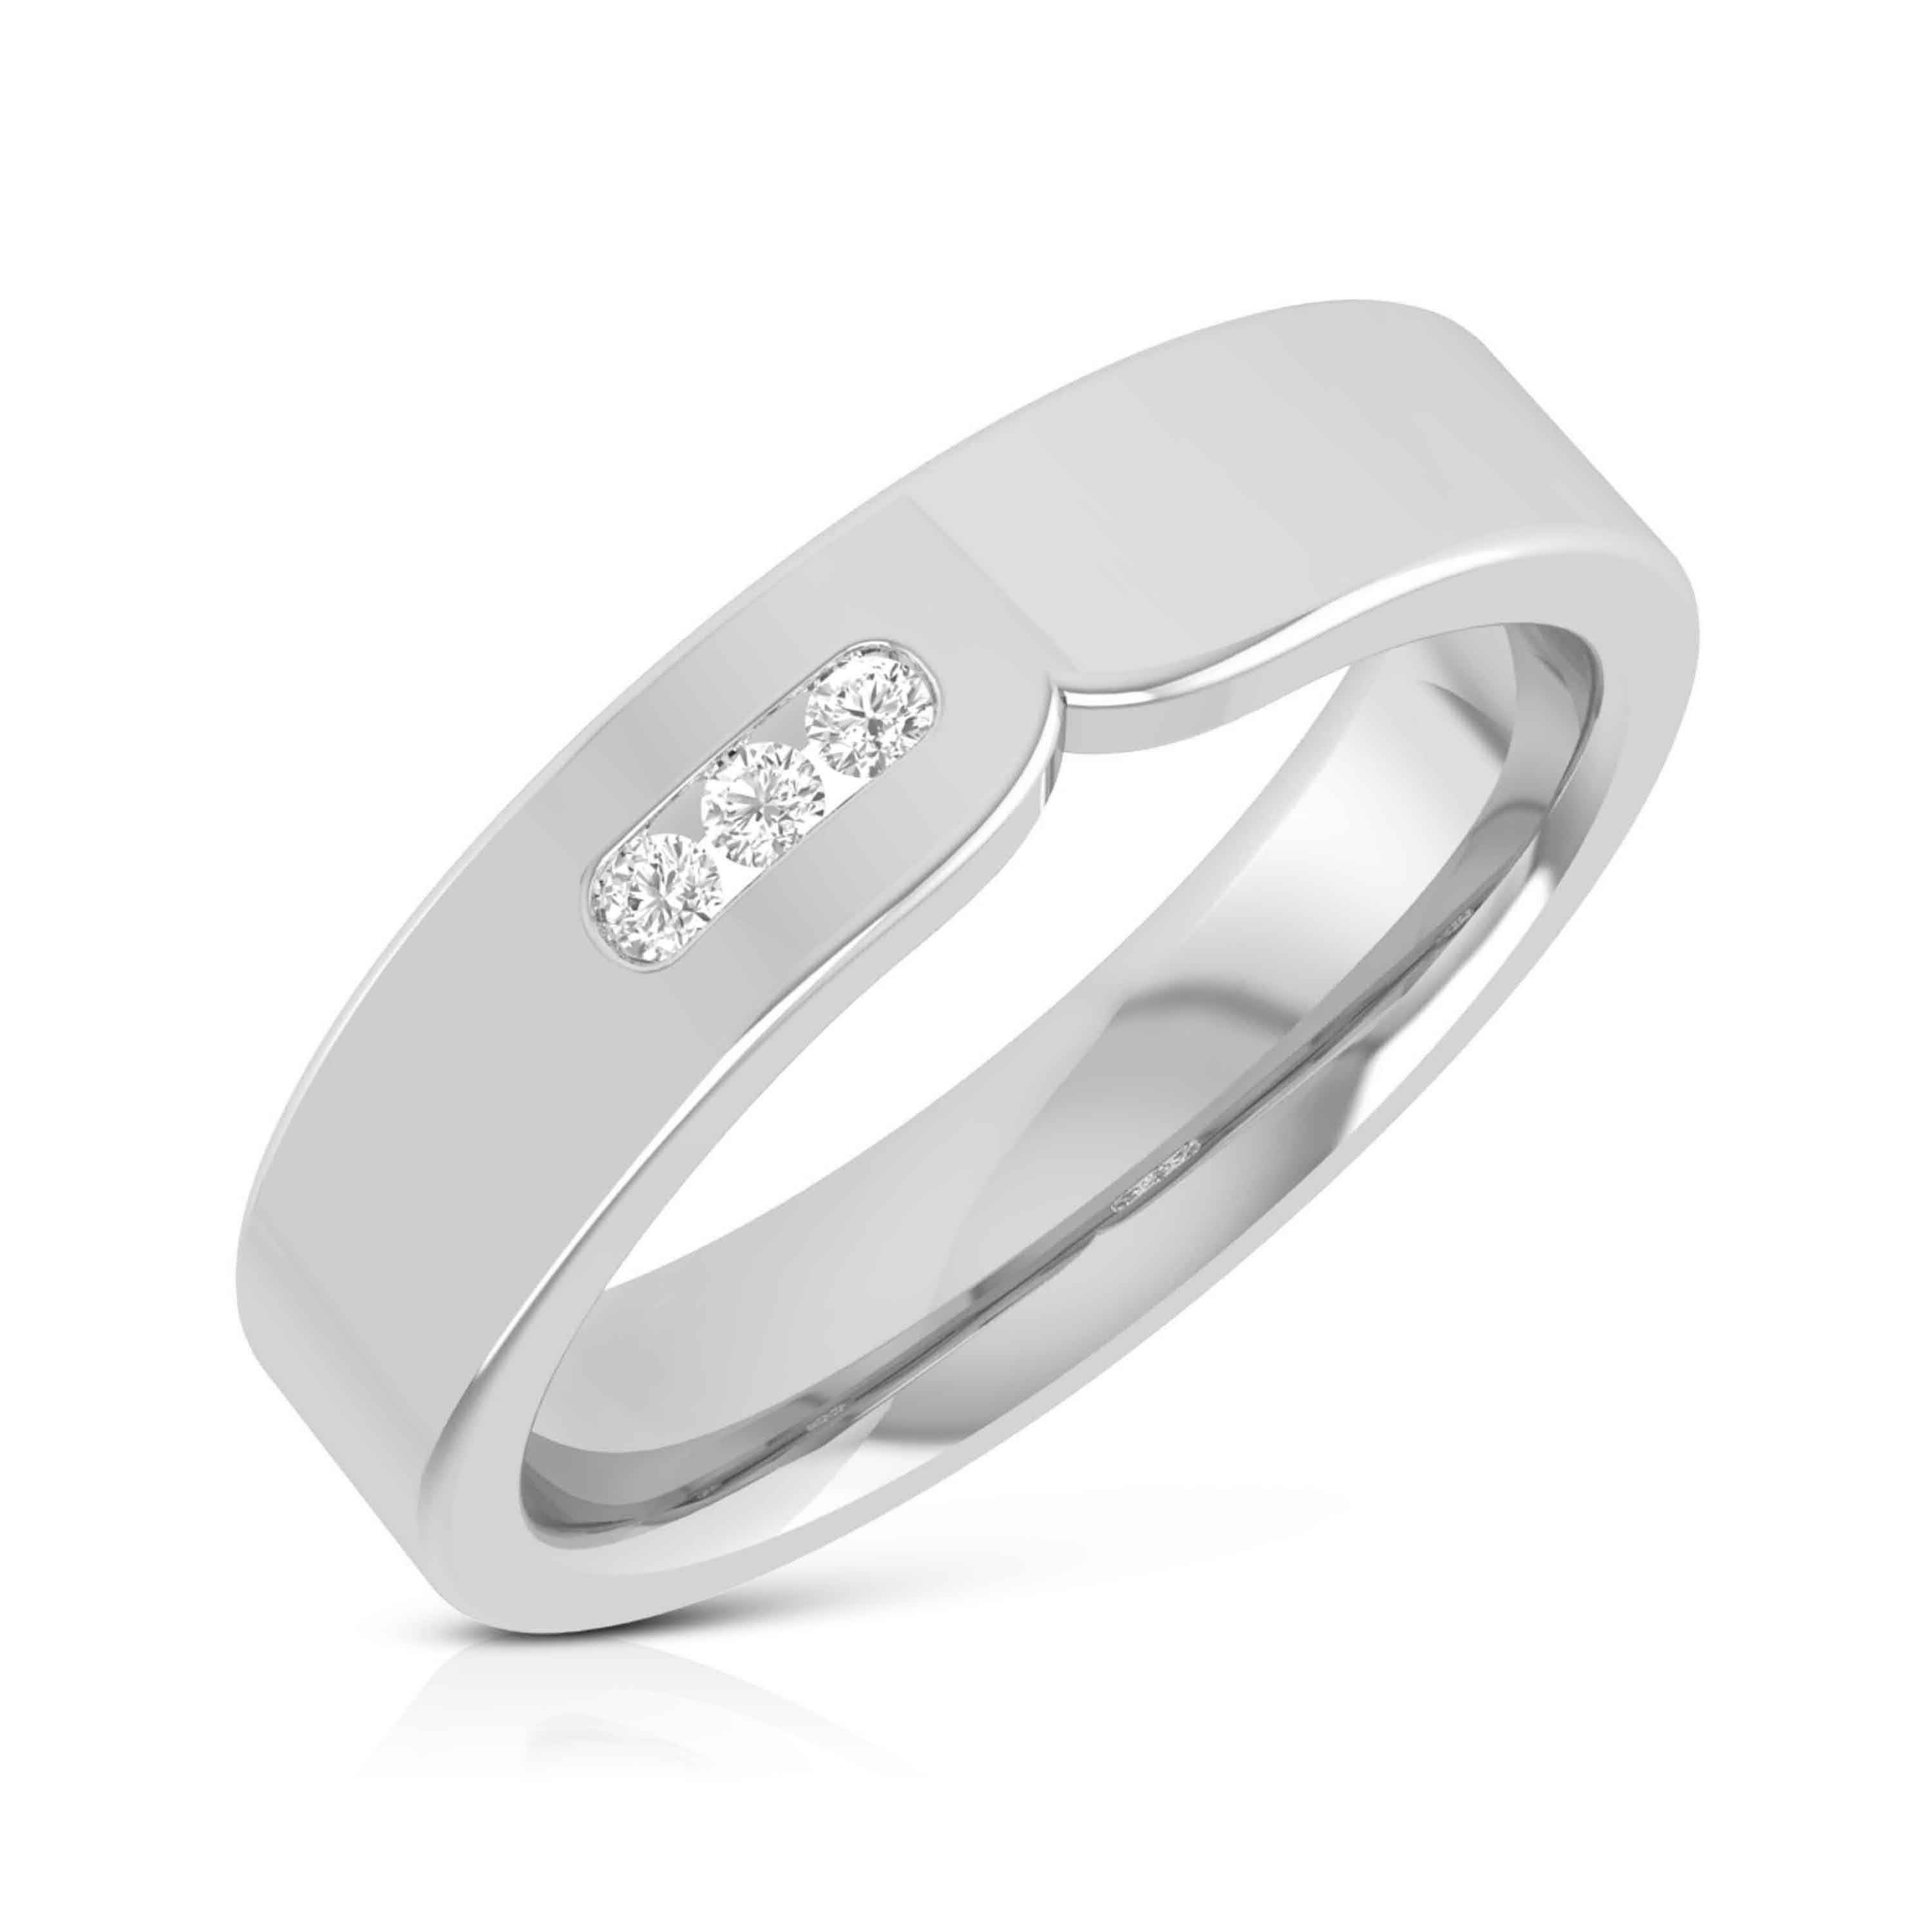 Sharp Diamond Ring for Men